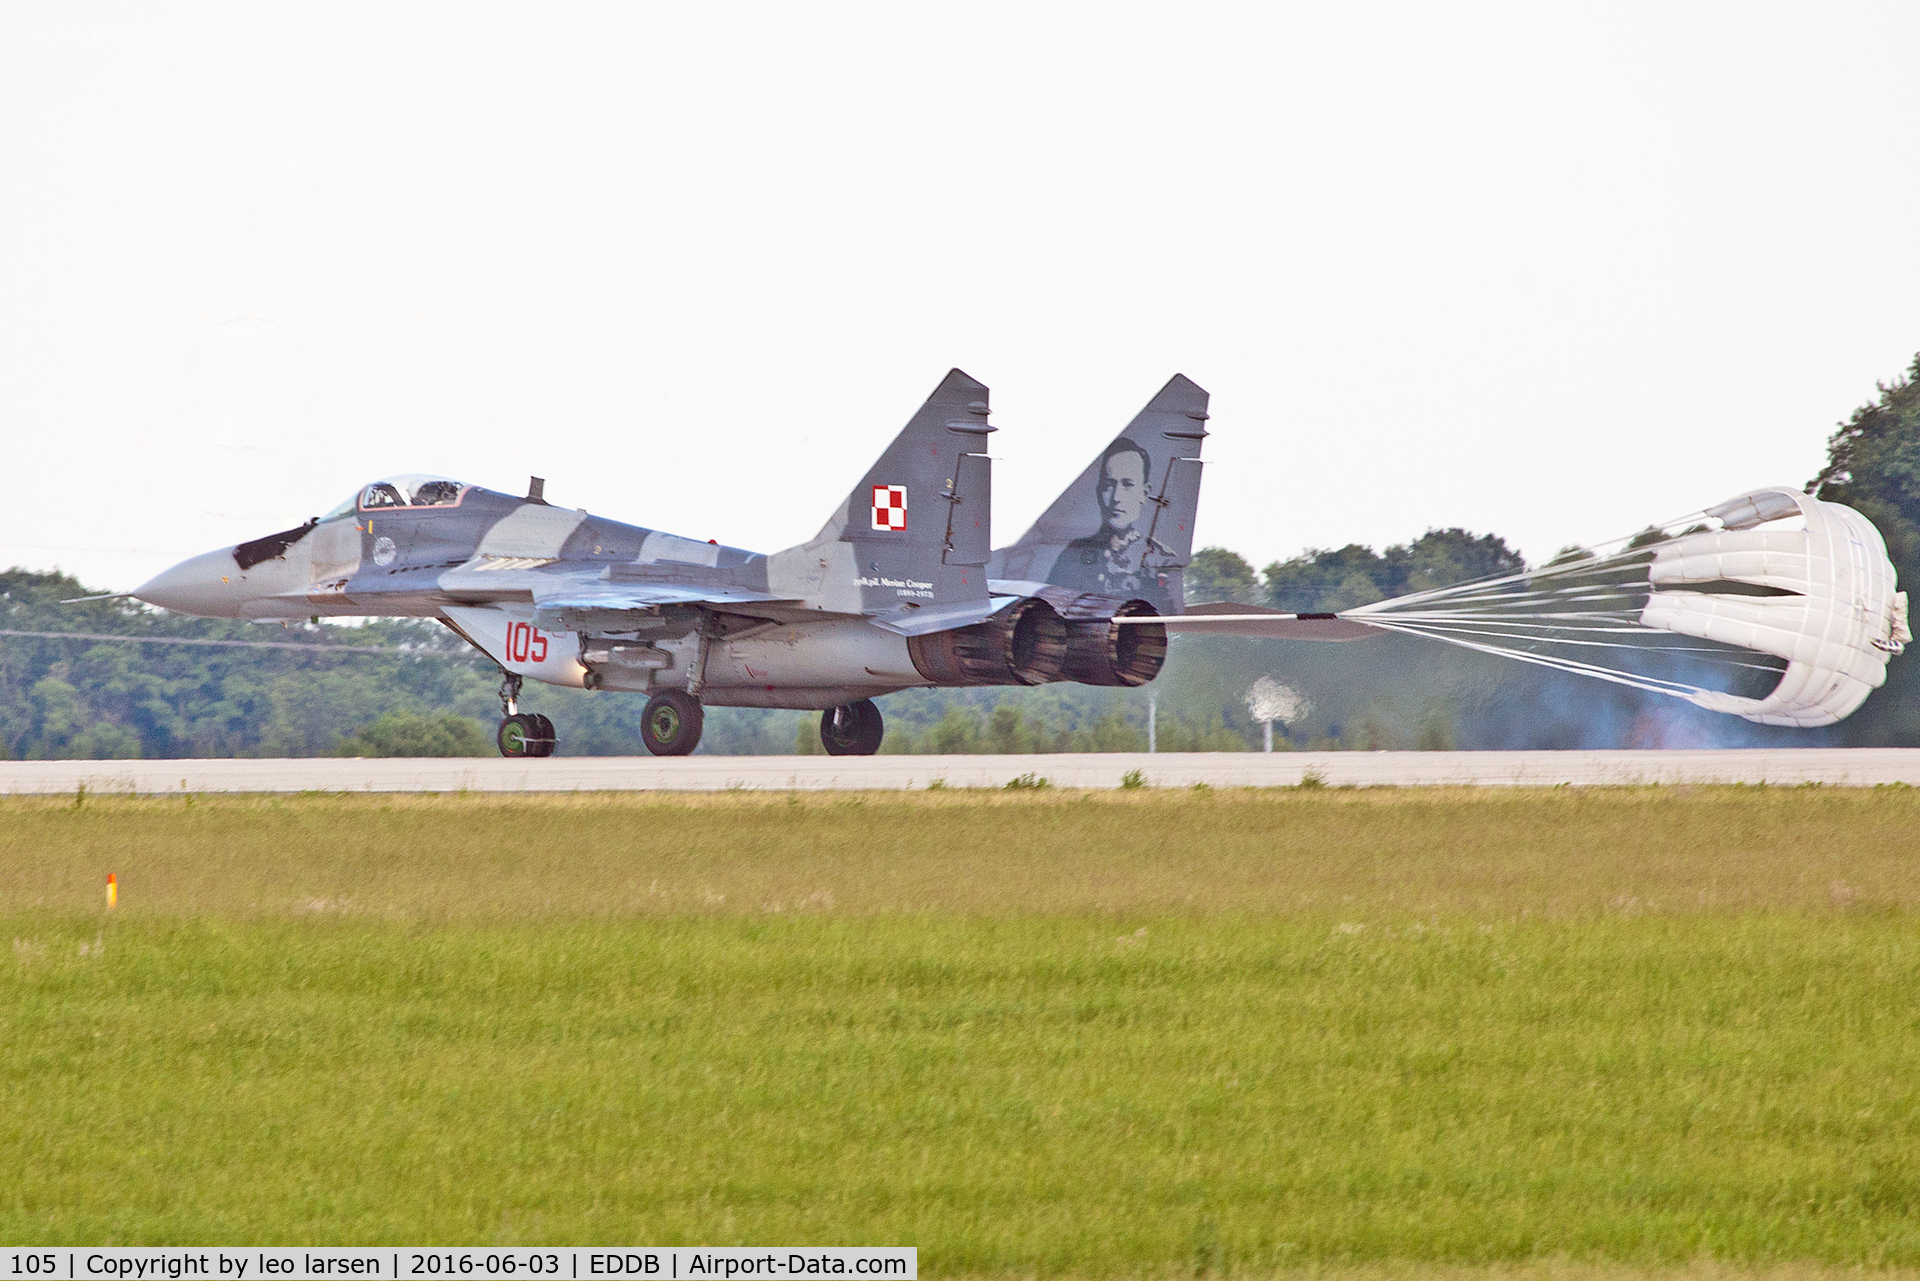 105, Mikoyan-Gurevich MiG-29A C/N 2960535105, Berlin Air Show 3.6.16